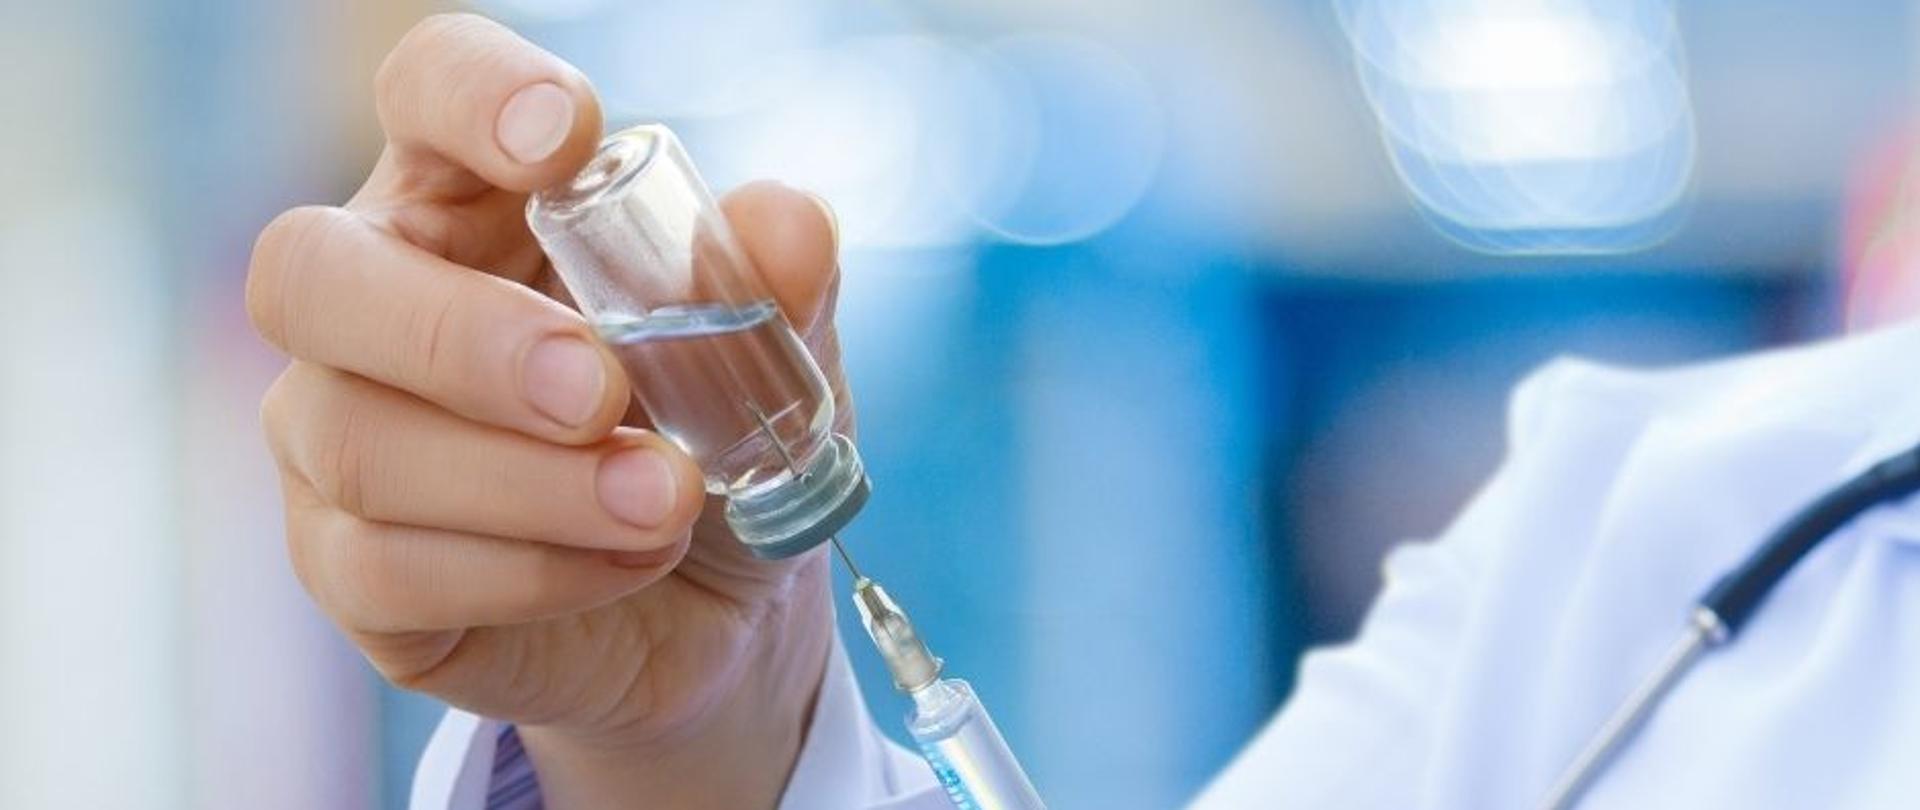 Lekarz pobiera strzykawką szczepionkę z fiolki. Na zdjęciu widoczne dłonie, fragment białego fartucha oraz stetoskop.